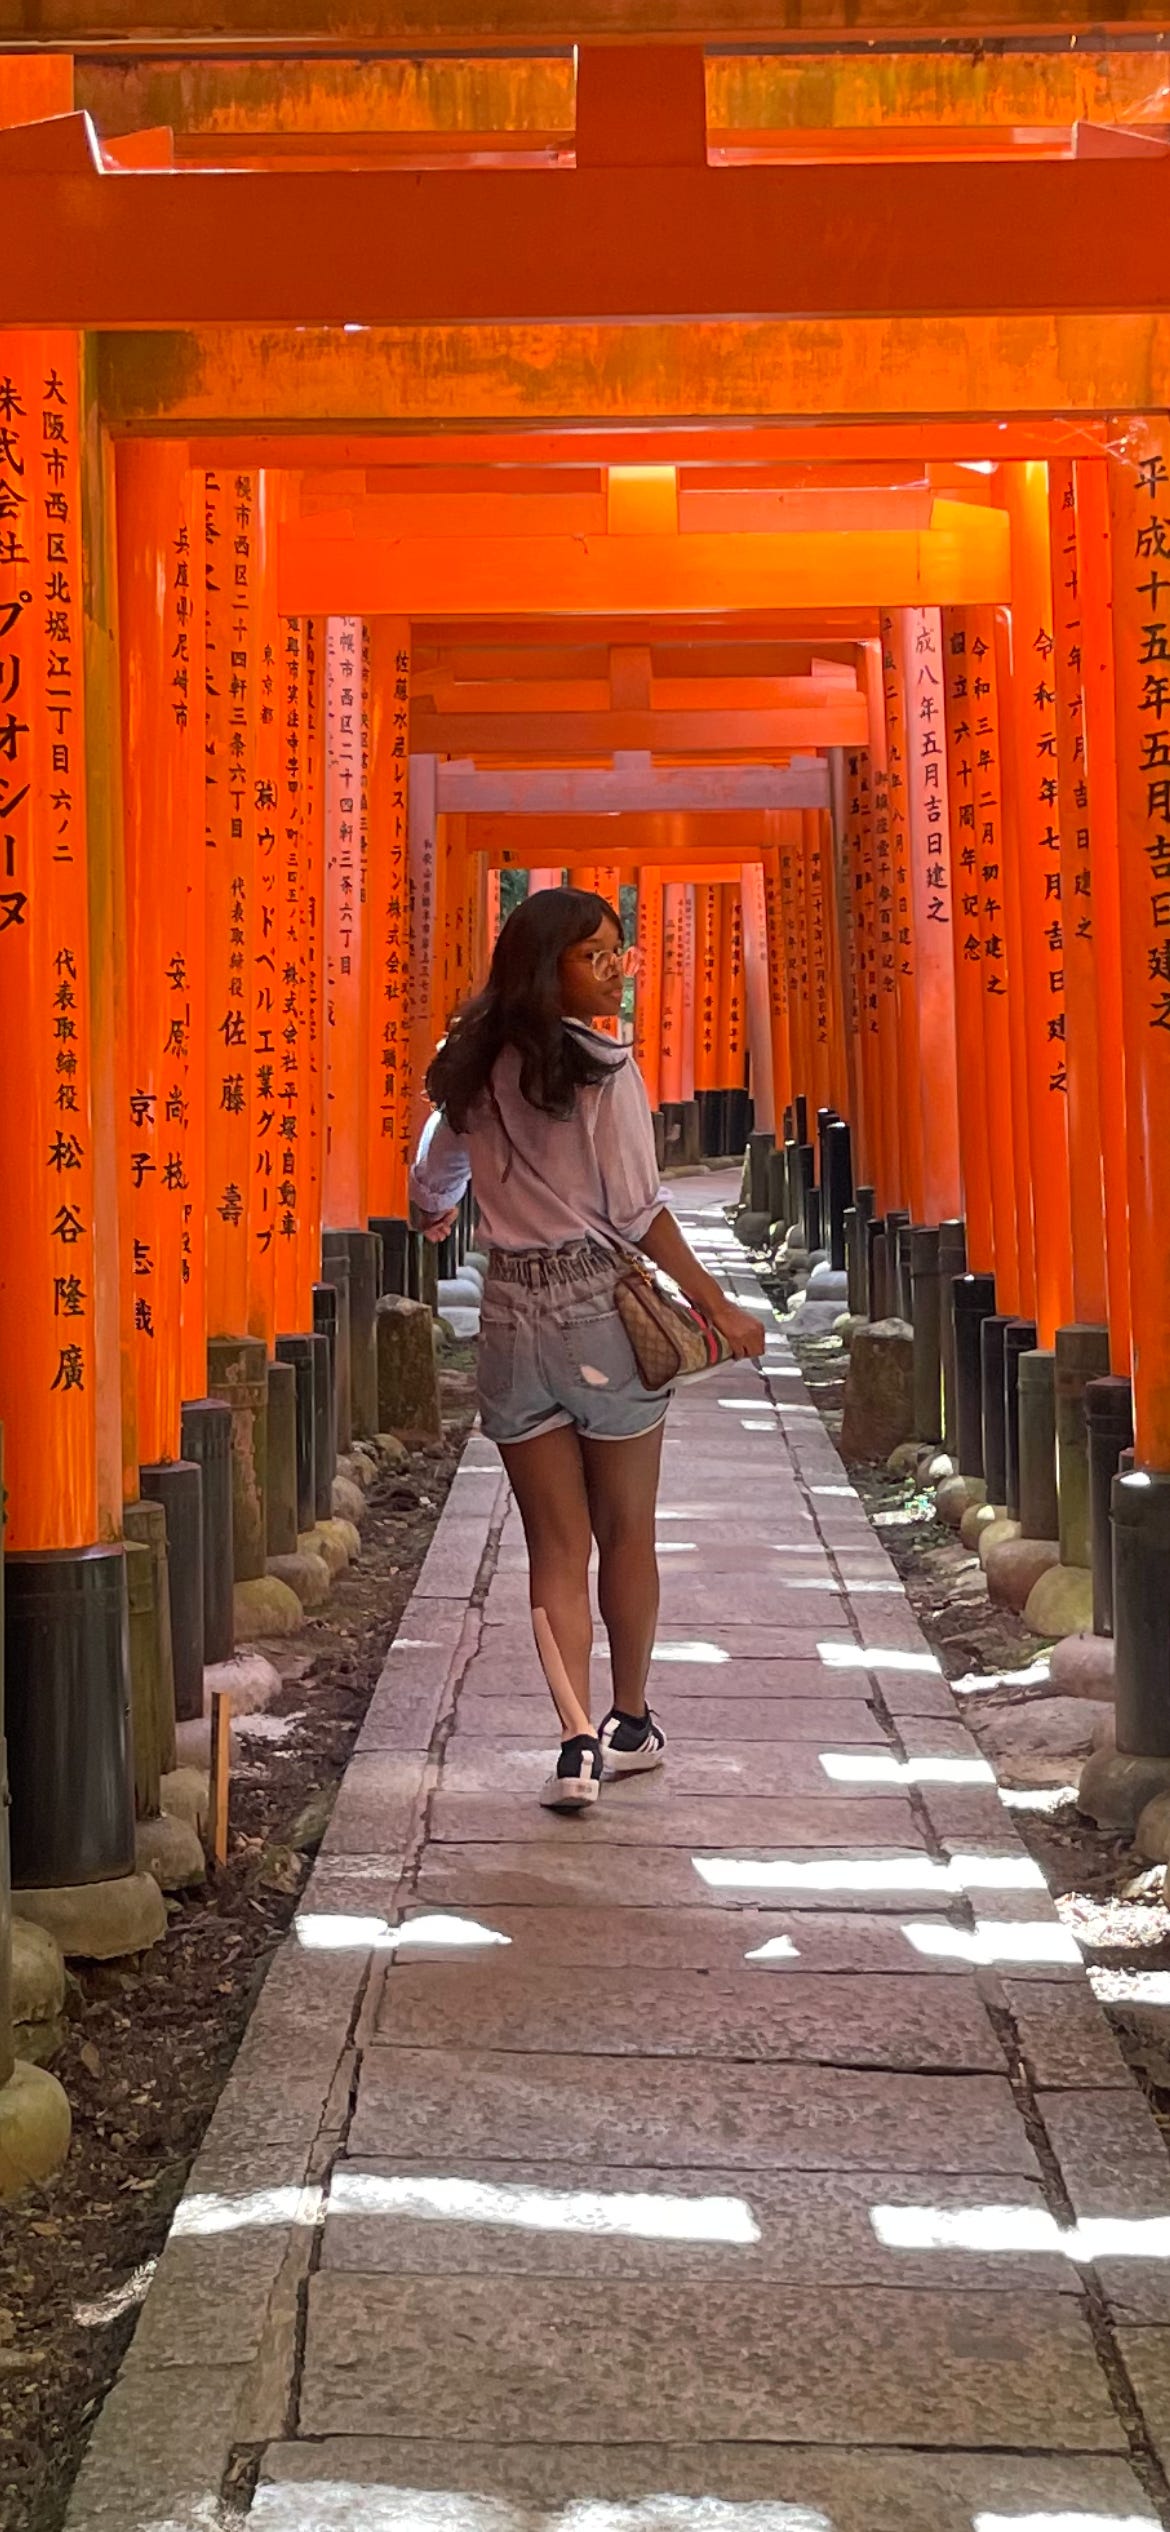  Kat Lewis, a Black woman, walking through the orange torii gates of Fushimi Inari Taisha.